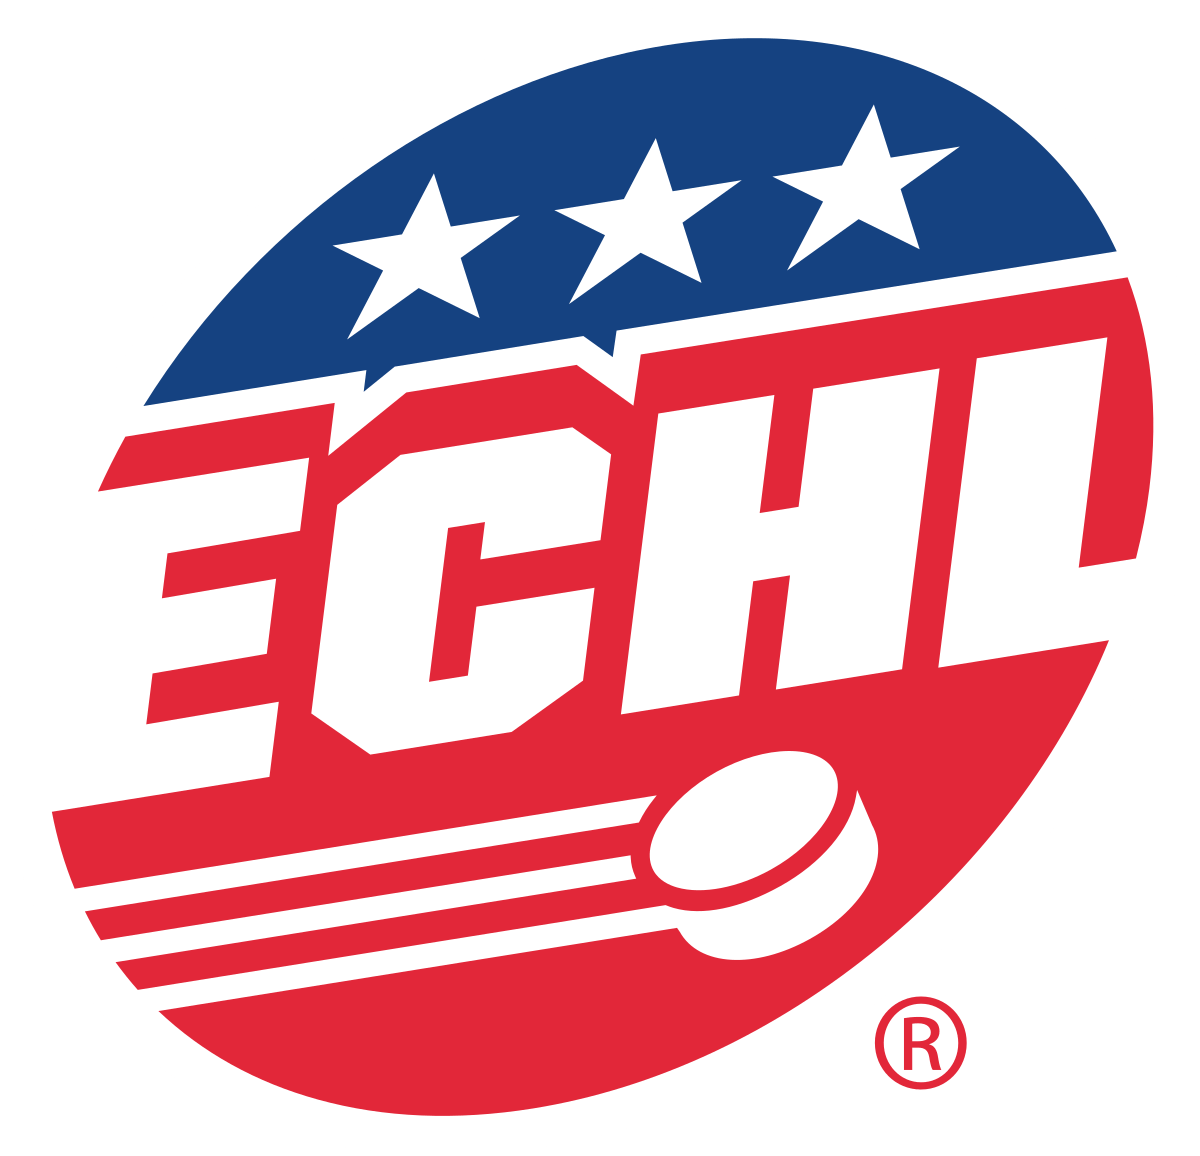 ECHL_Hockey.svg